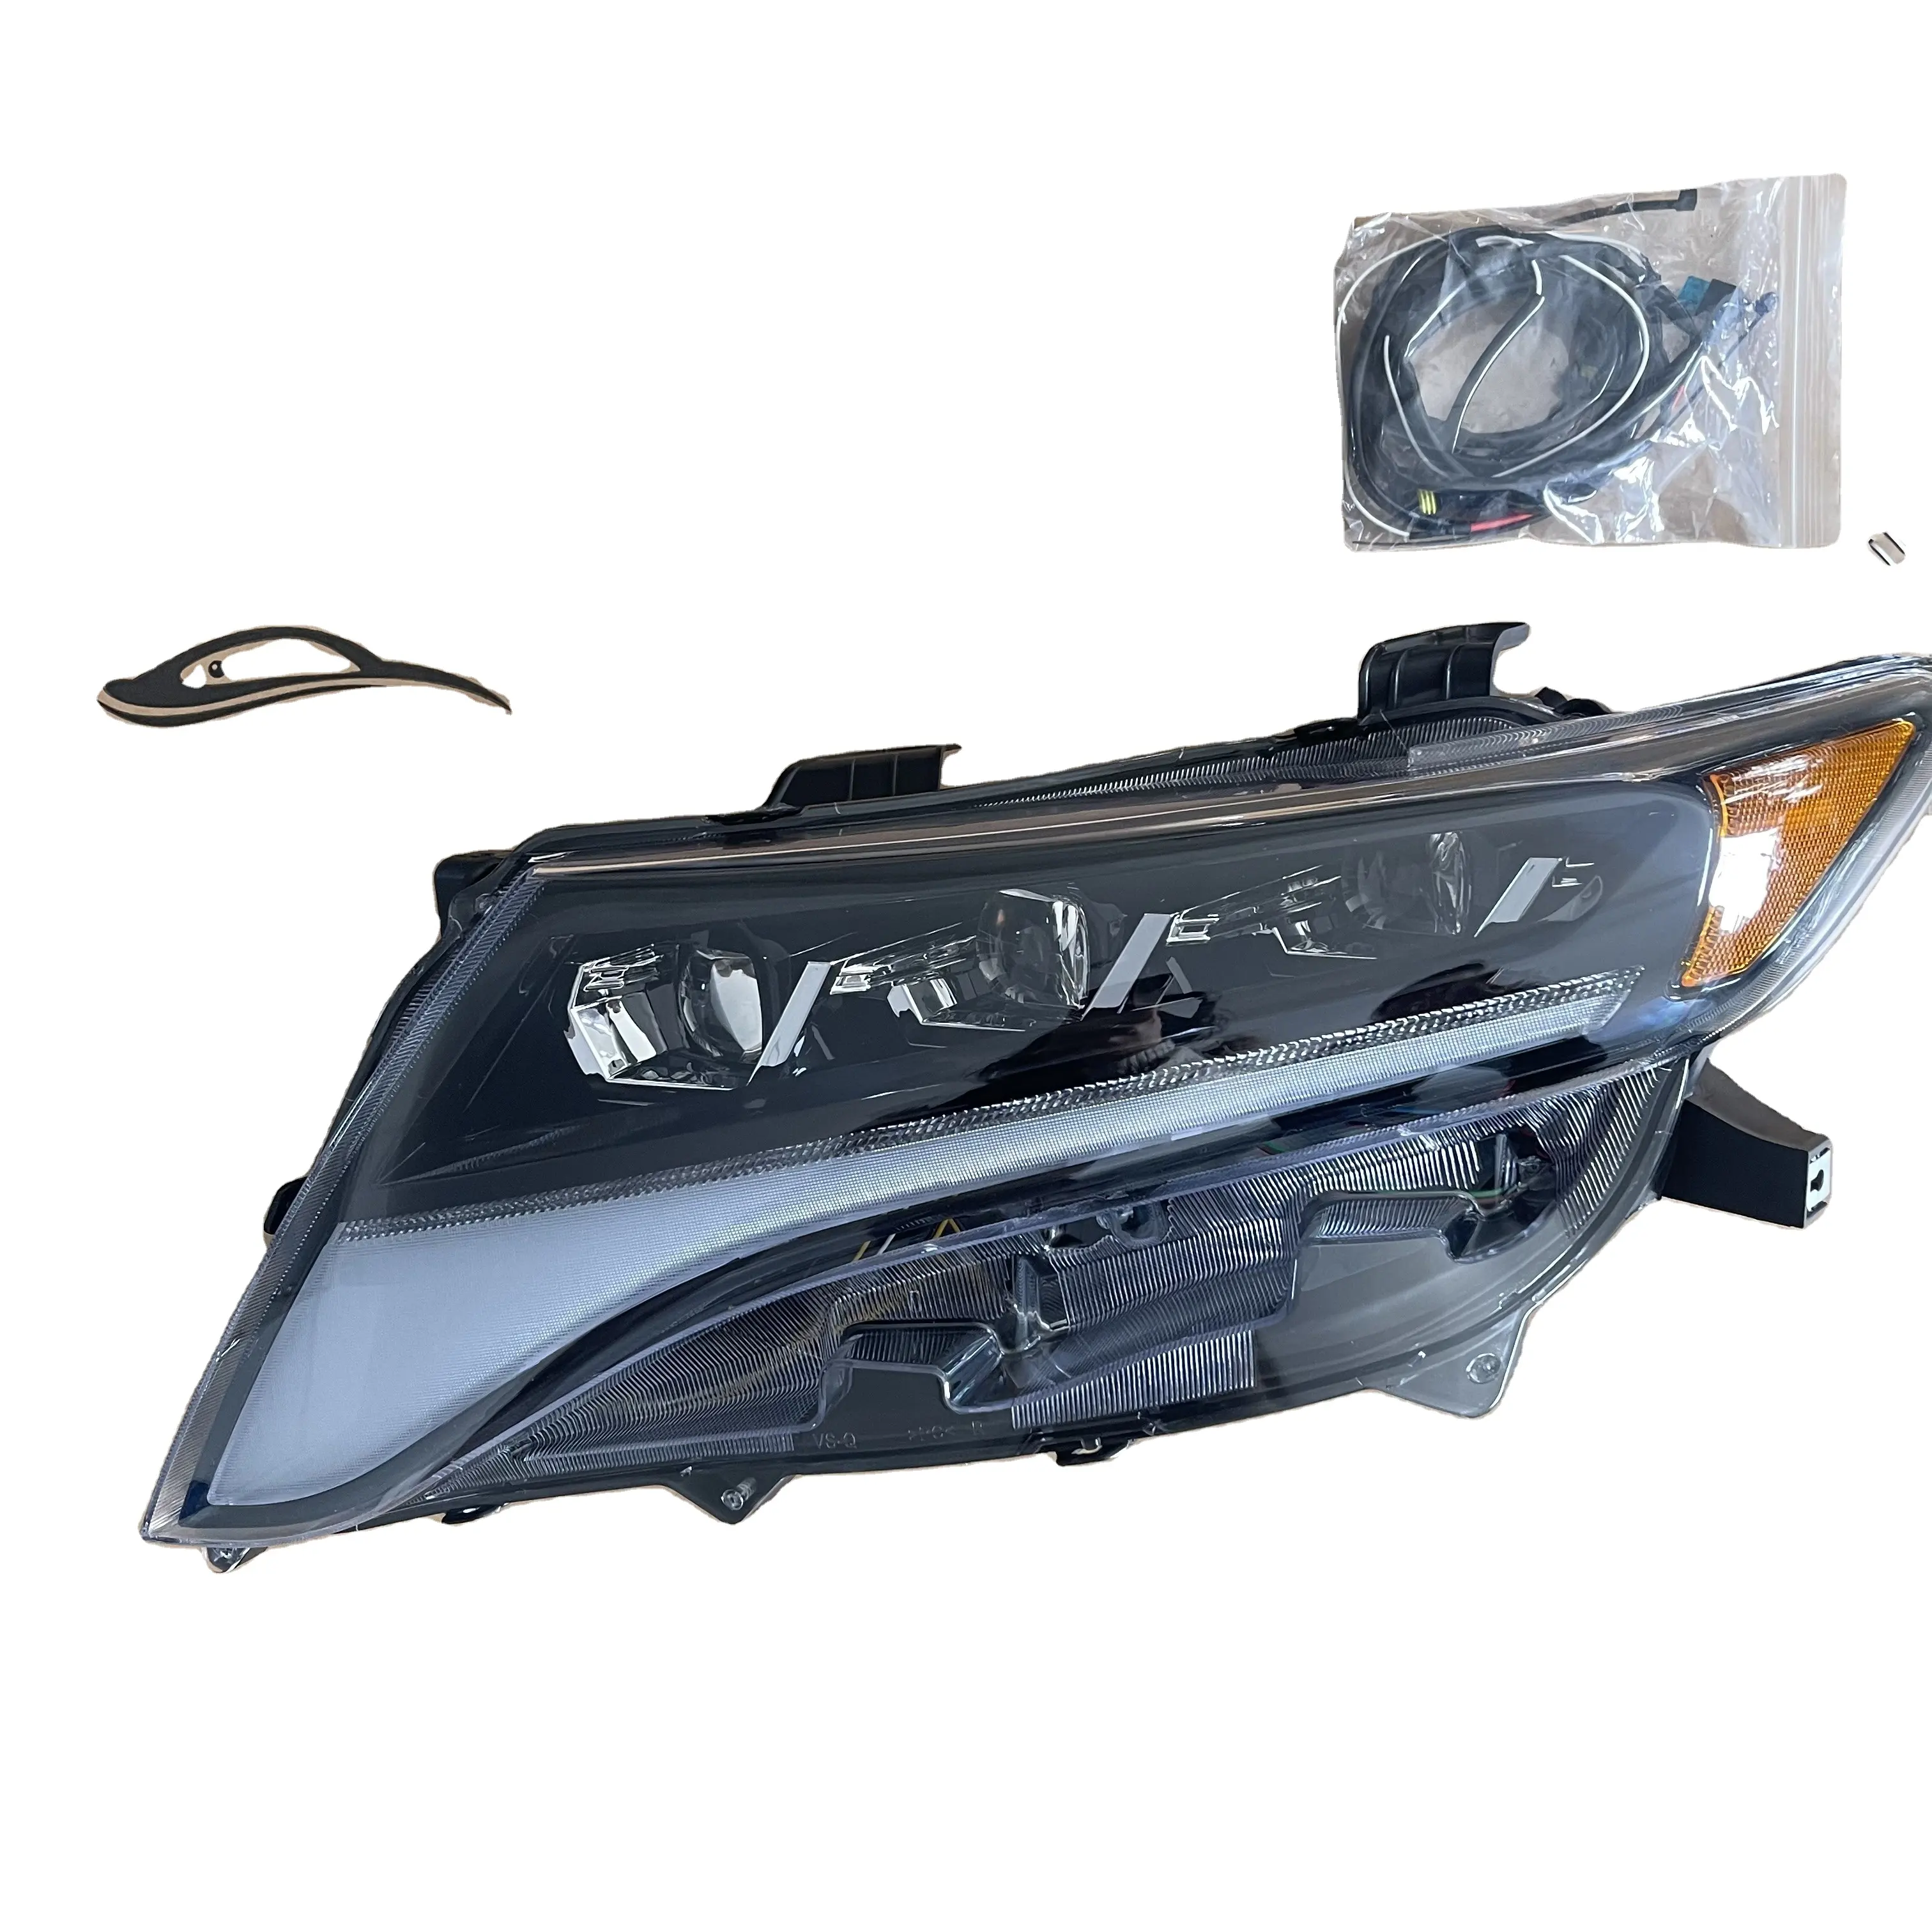 MX acessórios Do Carro faróis lâmpadas de cabeça para toyota venza 2008-2016 ano atualização faróis led 3 lentes lâmpadas led